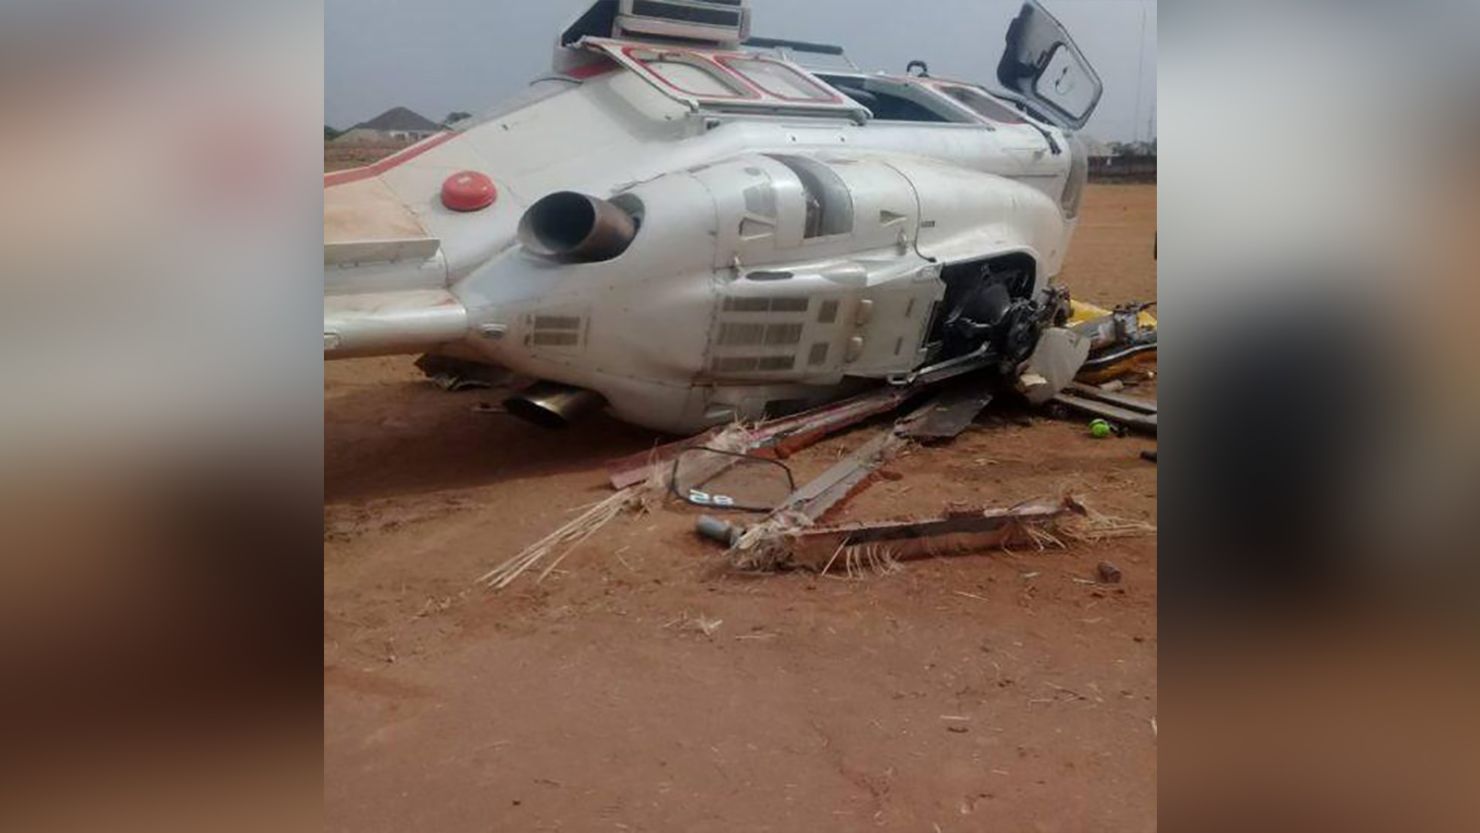 Vice President Yemi Osinbajo's helicopter crash-landed in Kogi State on Saturday,